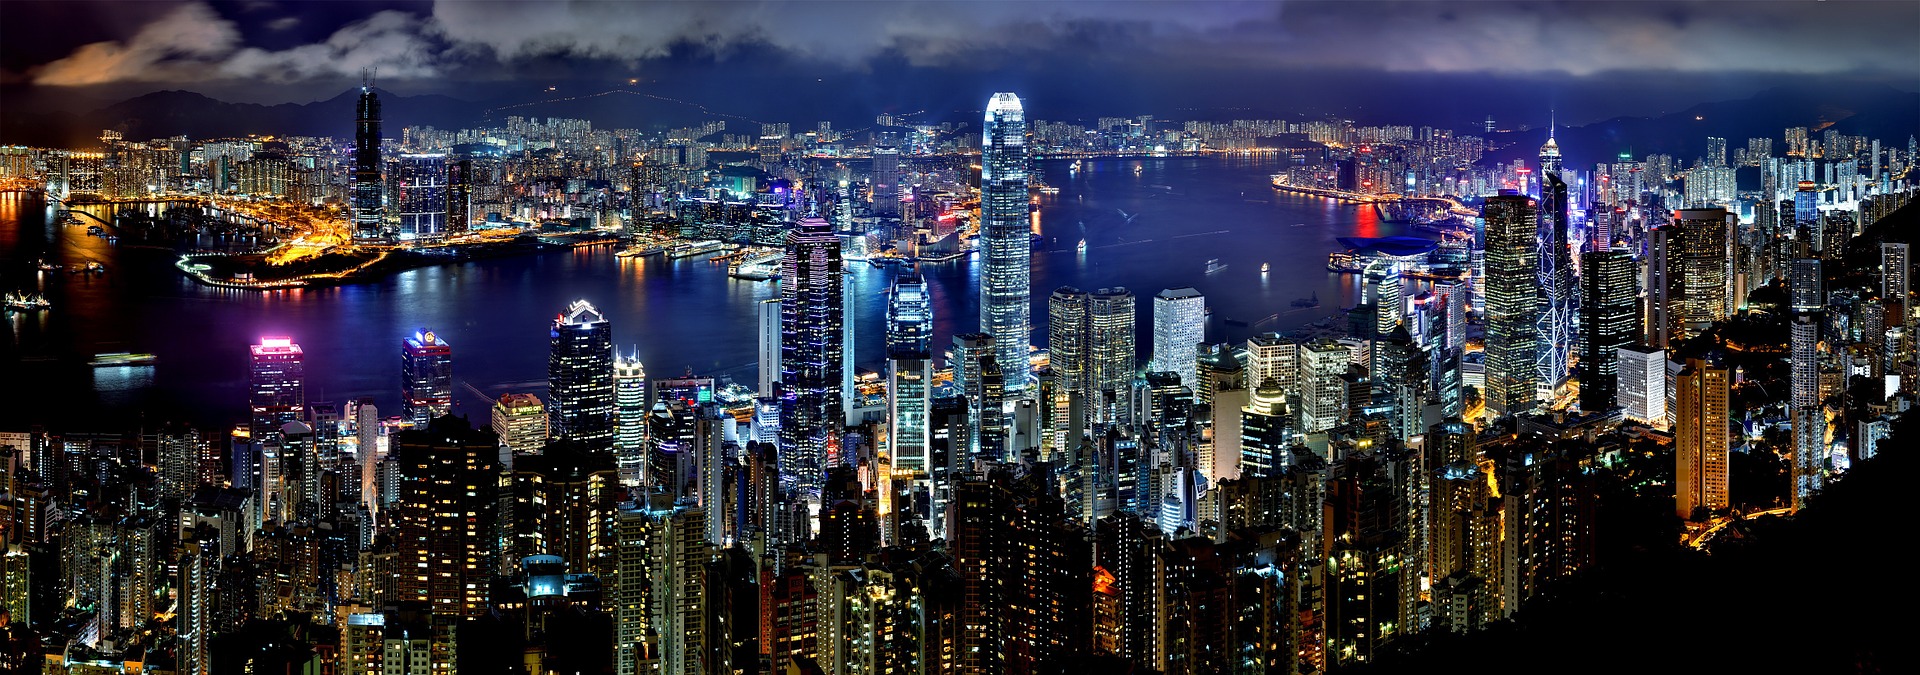 В Гонконге отменили традиционный новогодний фейерверк из-за продолжающихся протестов